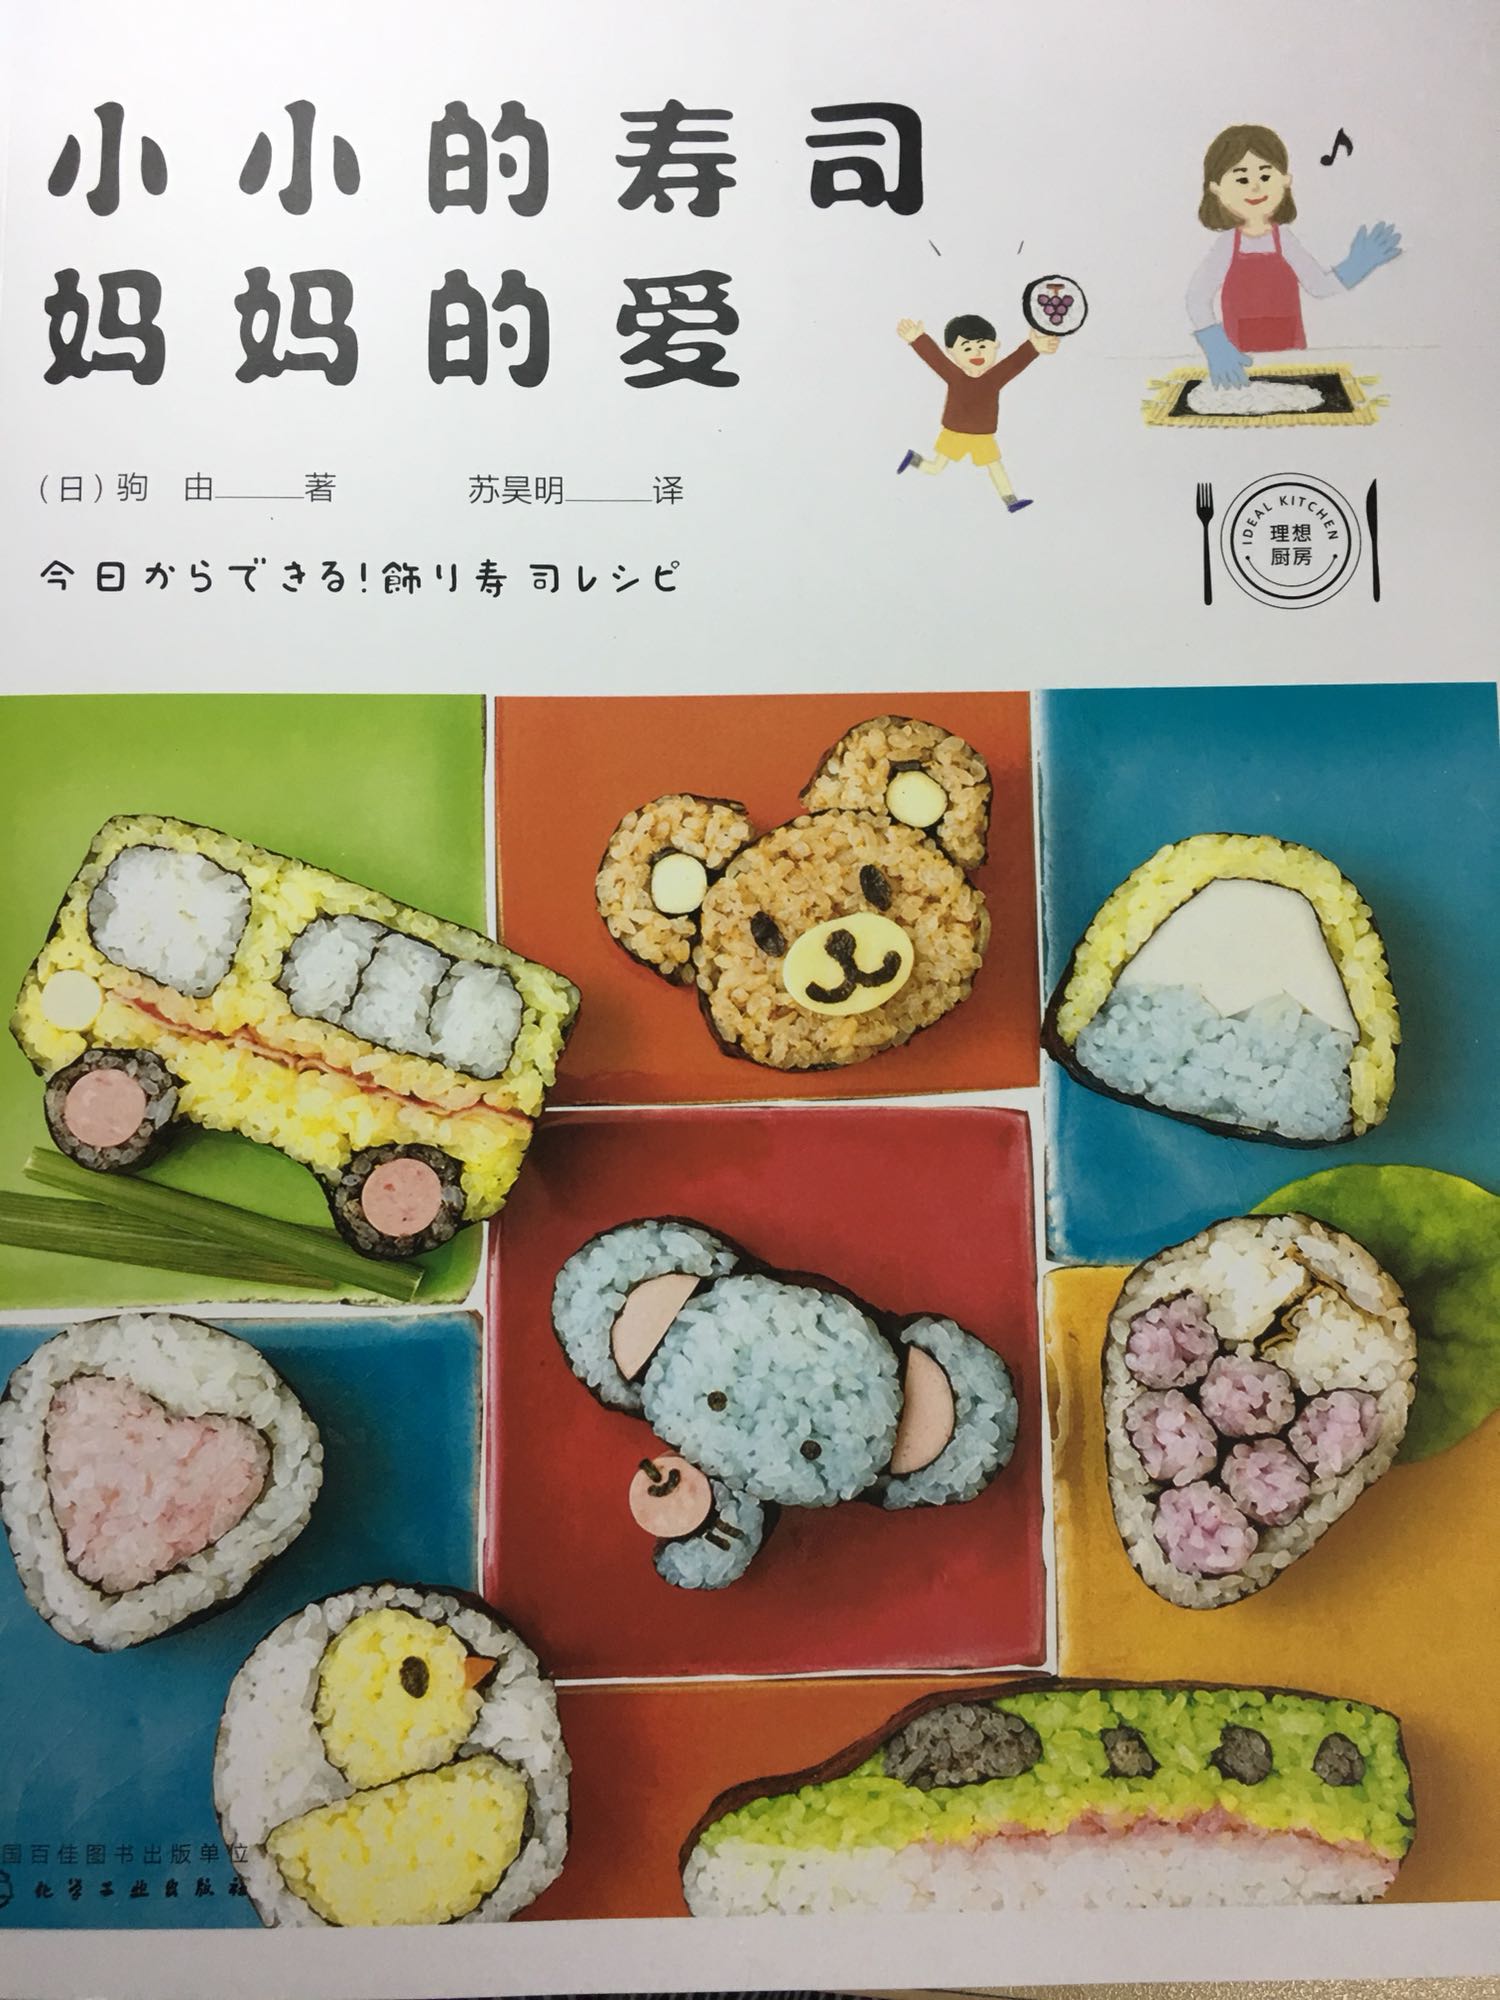 看封面就让人觉得心情大好，小小的寿司十分可爱，制作步骤介绍的特别详细，像我这种平时不太会做饭的人也绝对能给孩子做成功